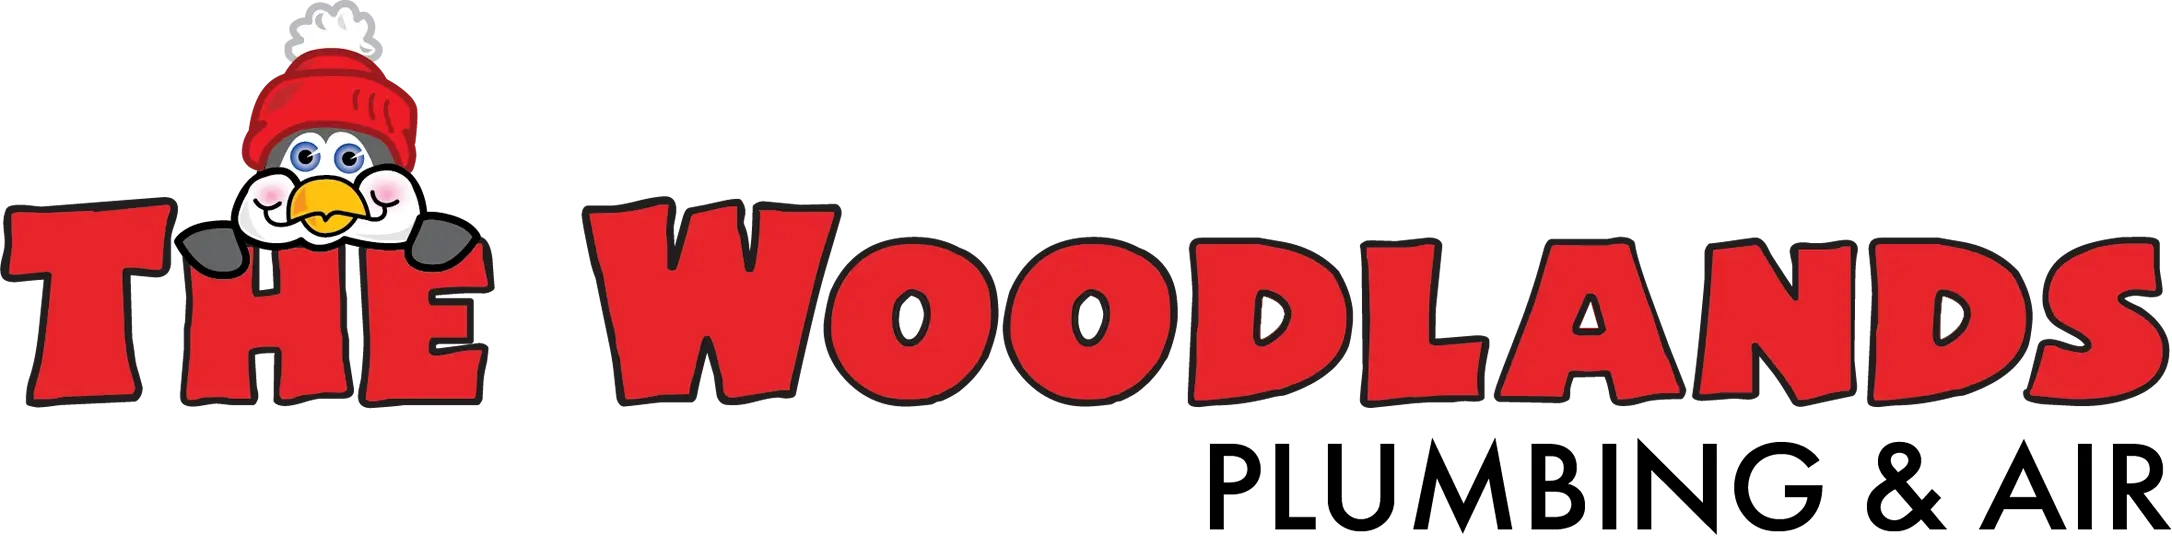 Woodlands Plumbing & Air Logo